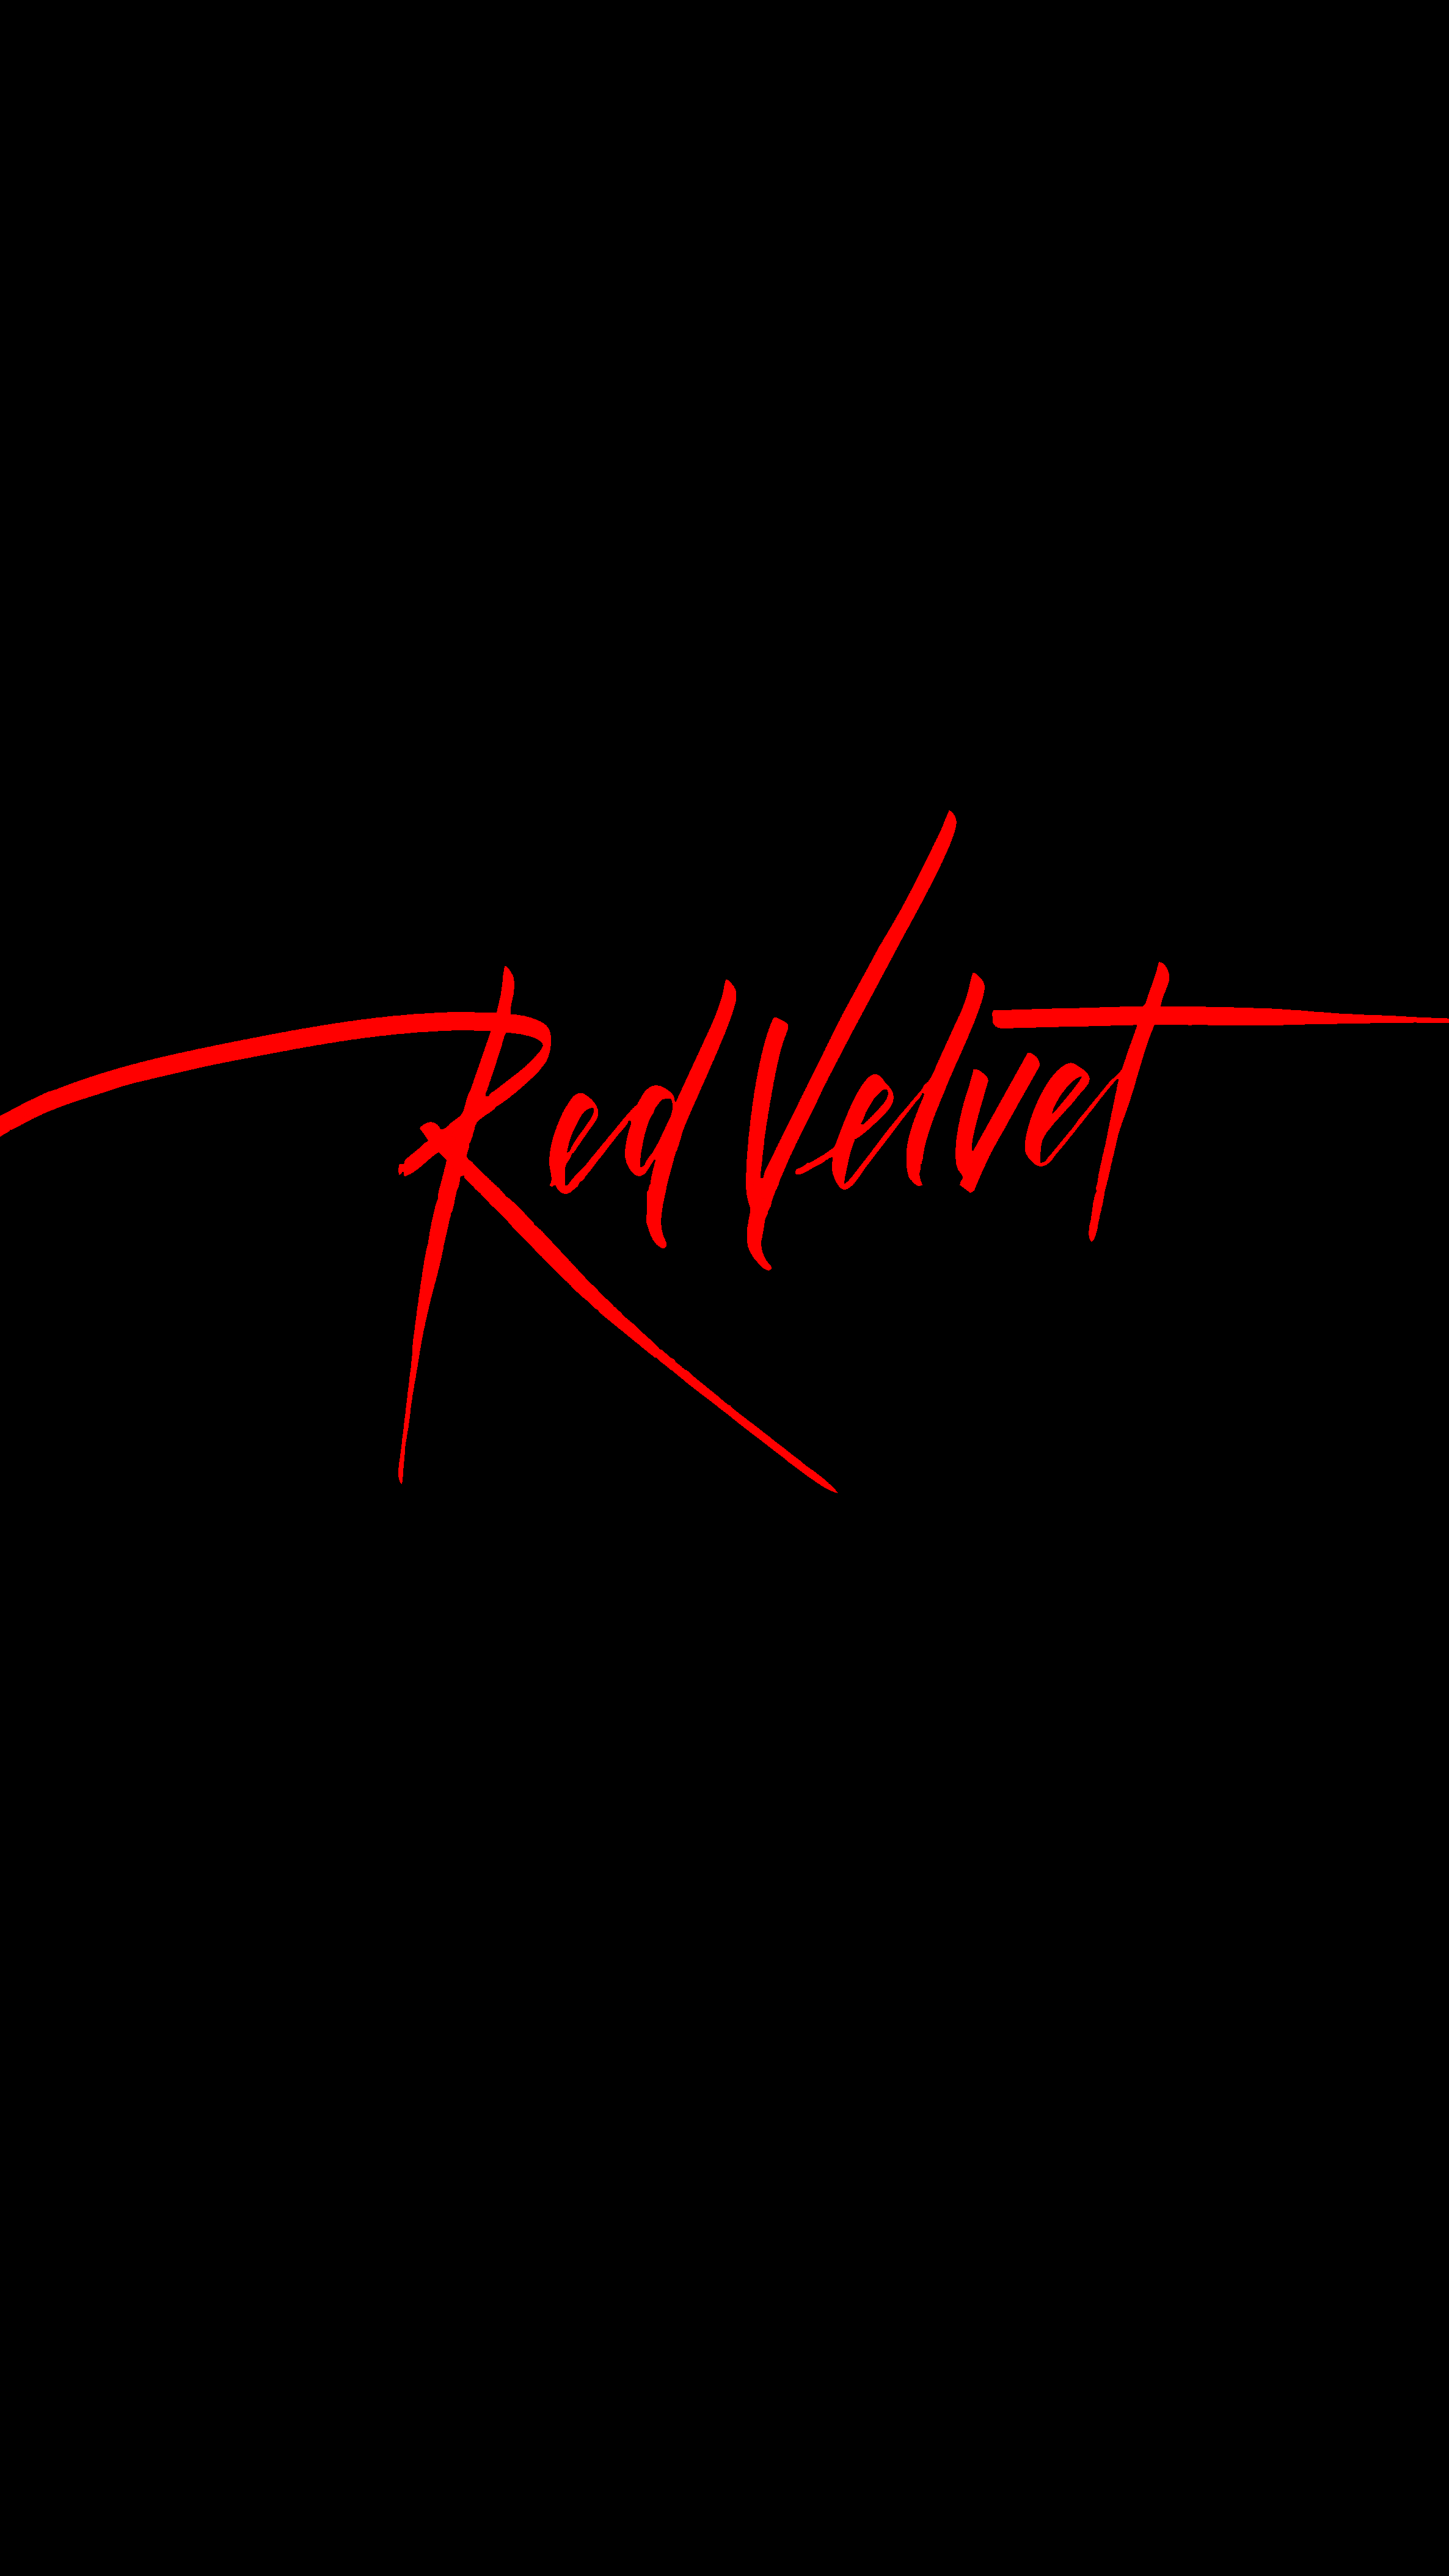 Just a Red Velvet wallpaper [2372x4218]